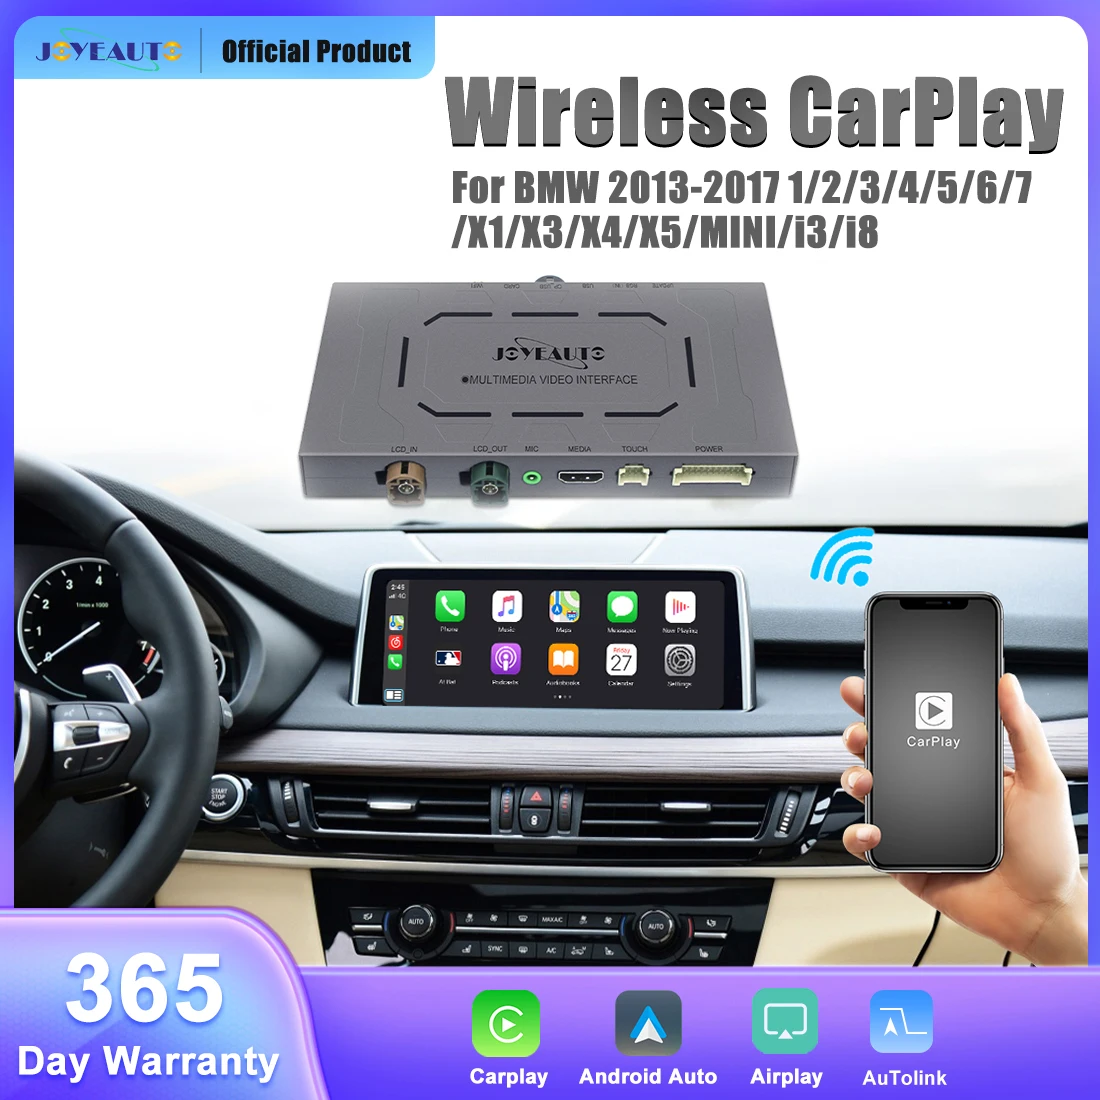 JOYEAUTO Wireless CarPlay for BMW 1 2 3 4 5 6 7 X1 X3 X4 X5 MINI i3 i8 2013-2017 NBT With Android Auto Mirror Link AirPlay